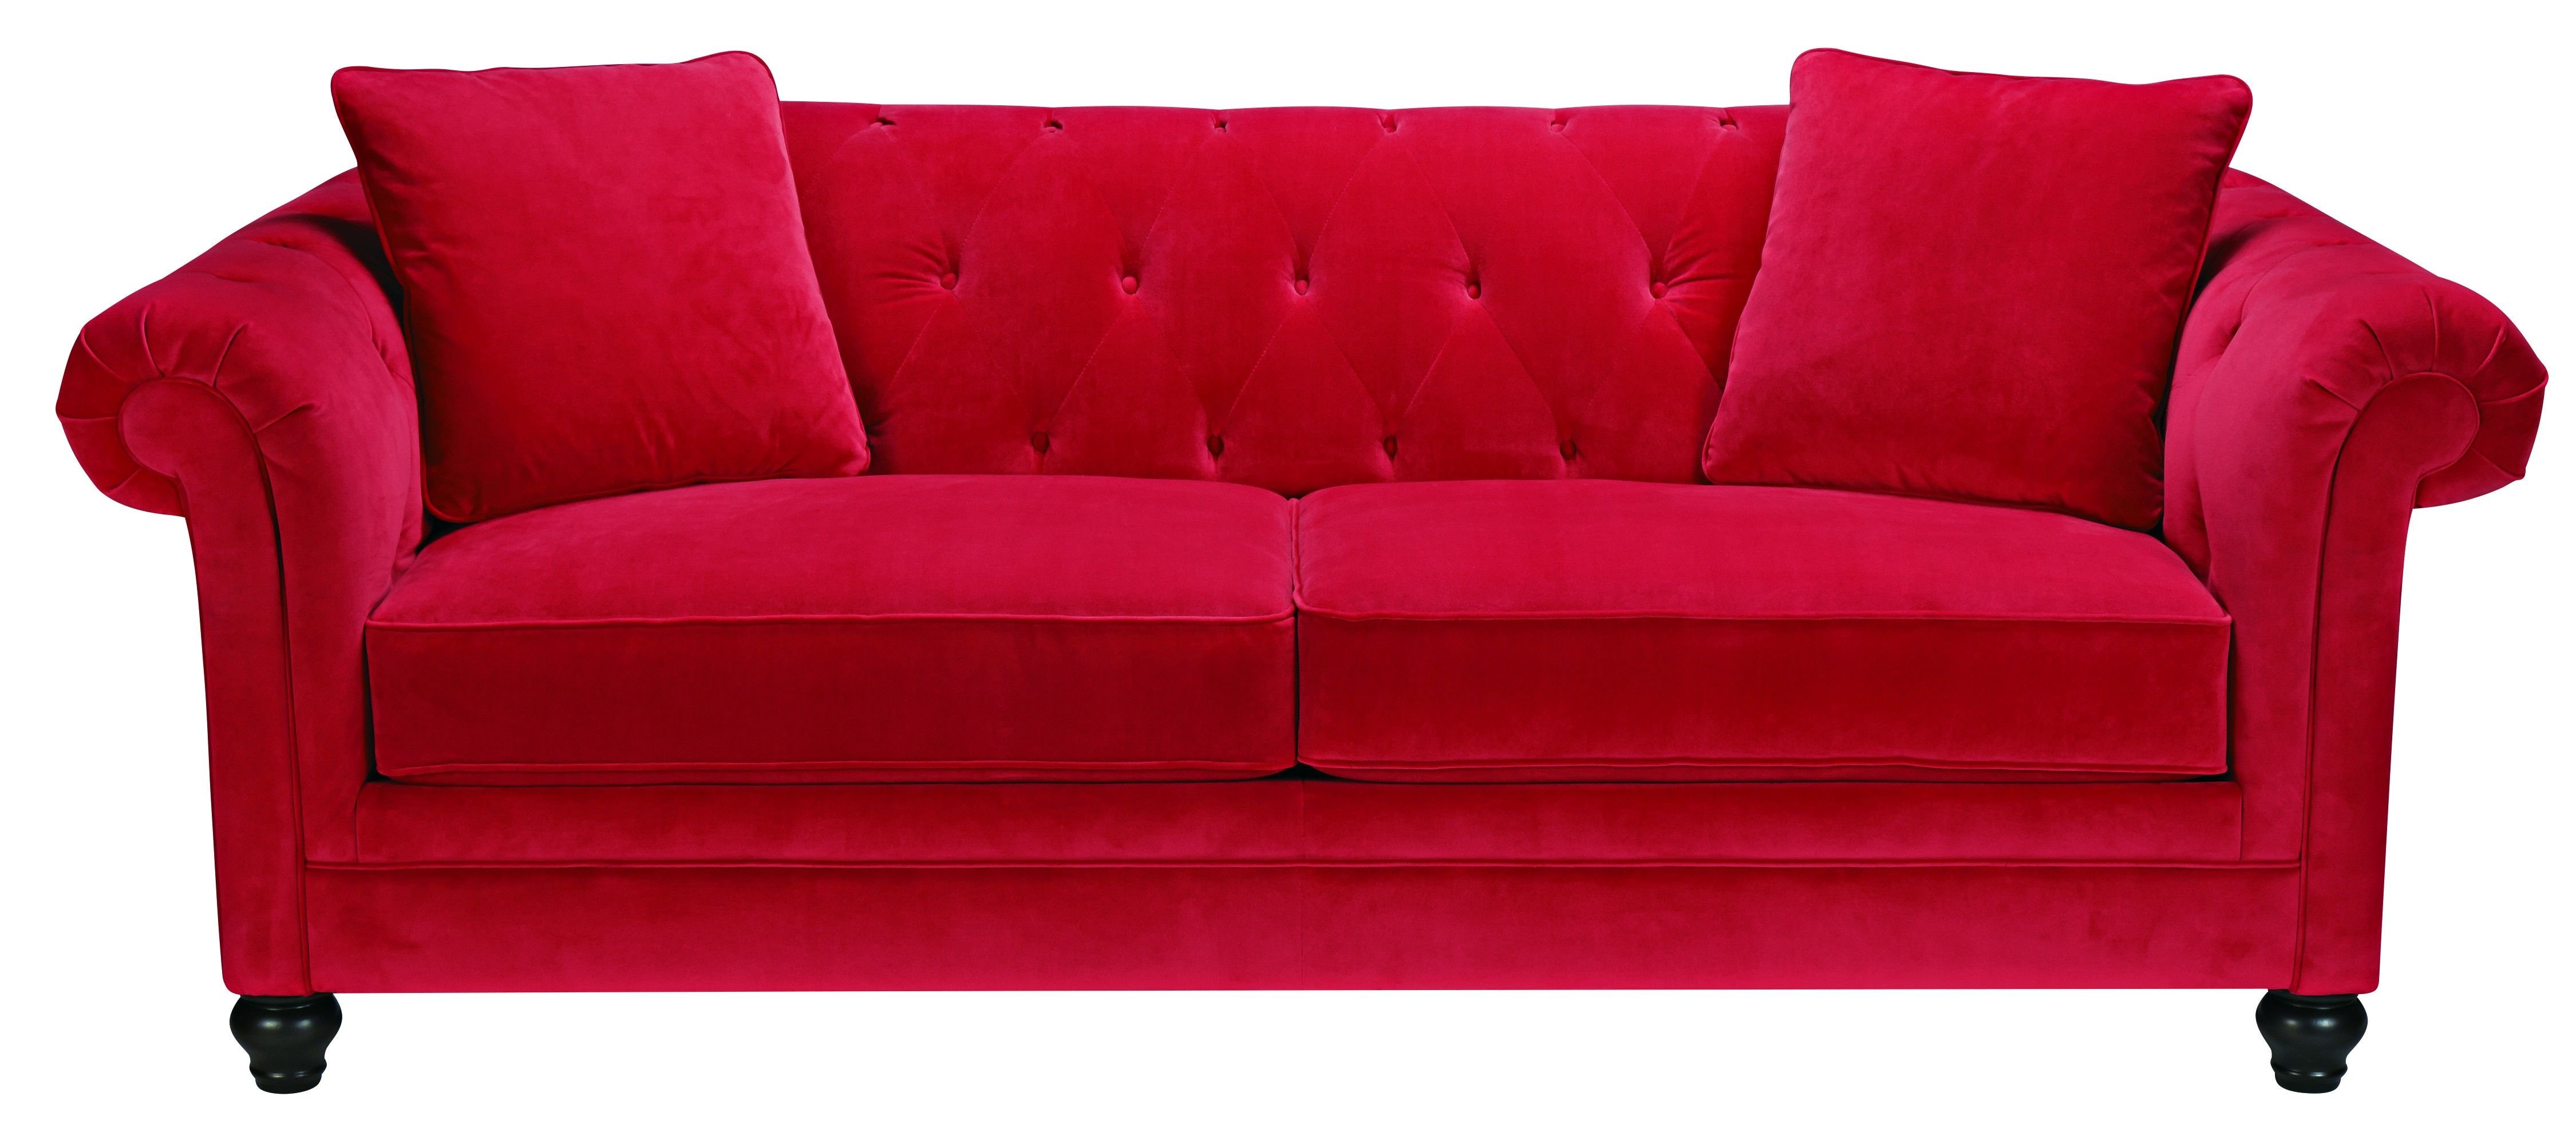 Sofa pictures. Красный диван. Красный диван на белом фоне. Диван для фотошопа. Диван без фона.